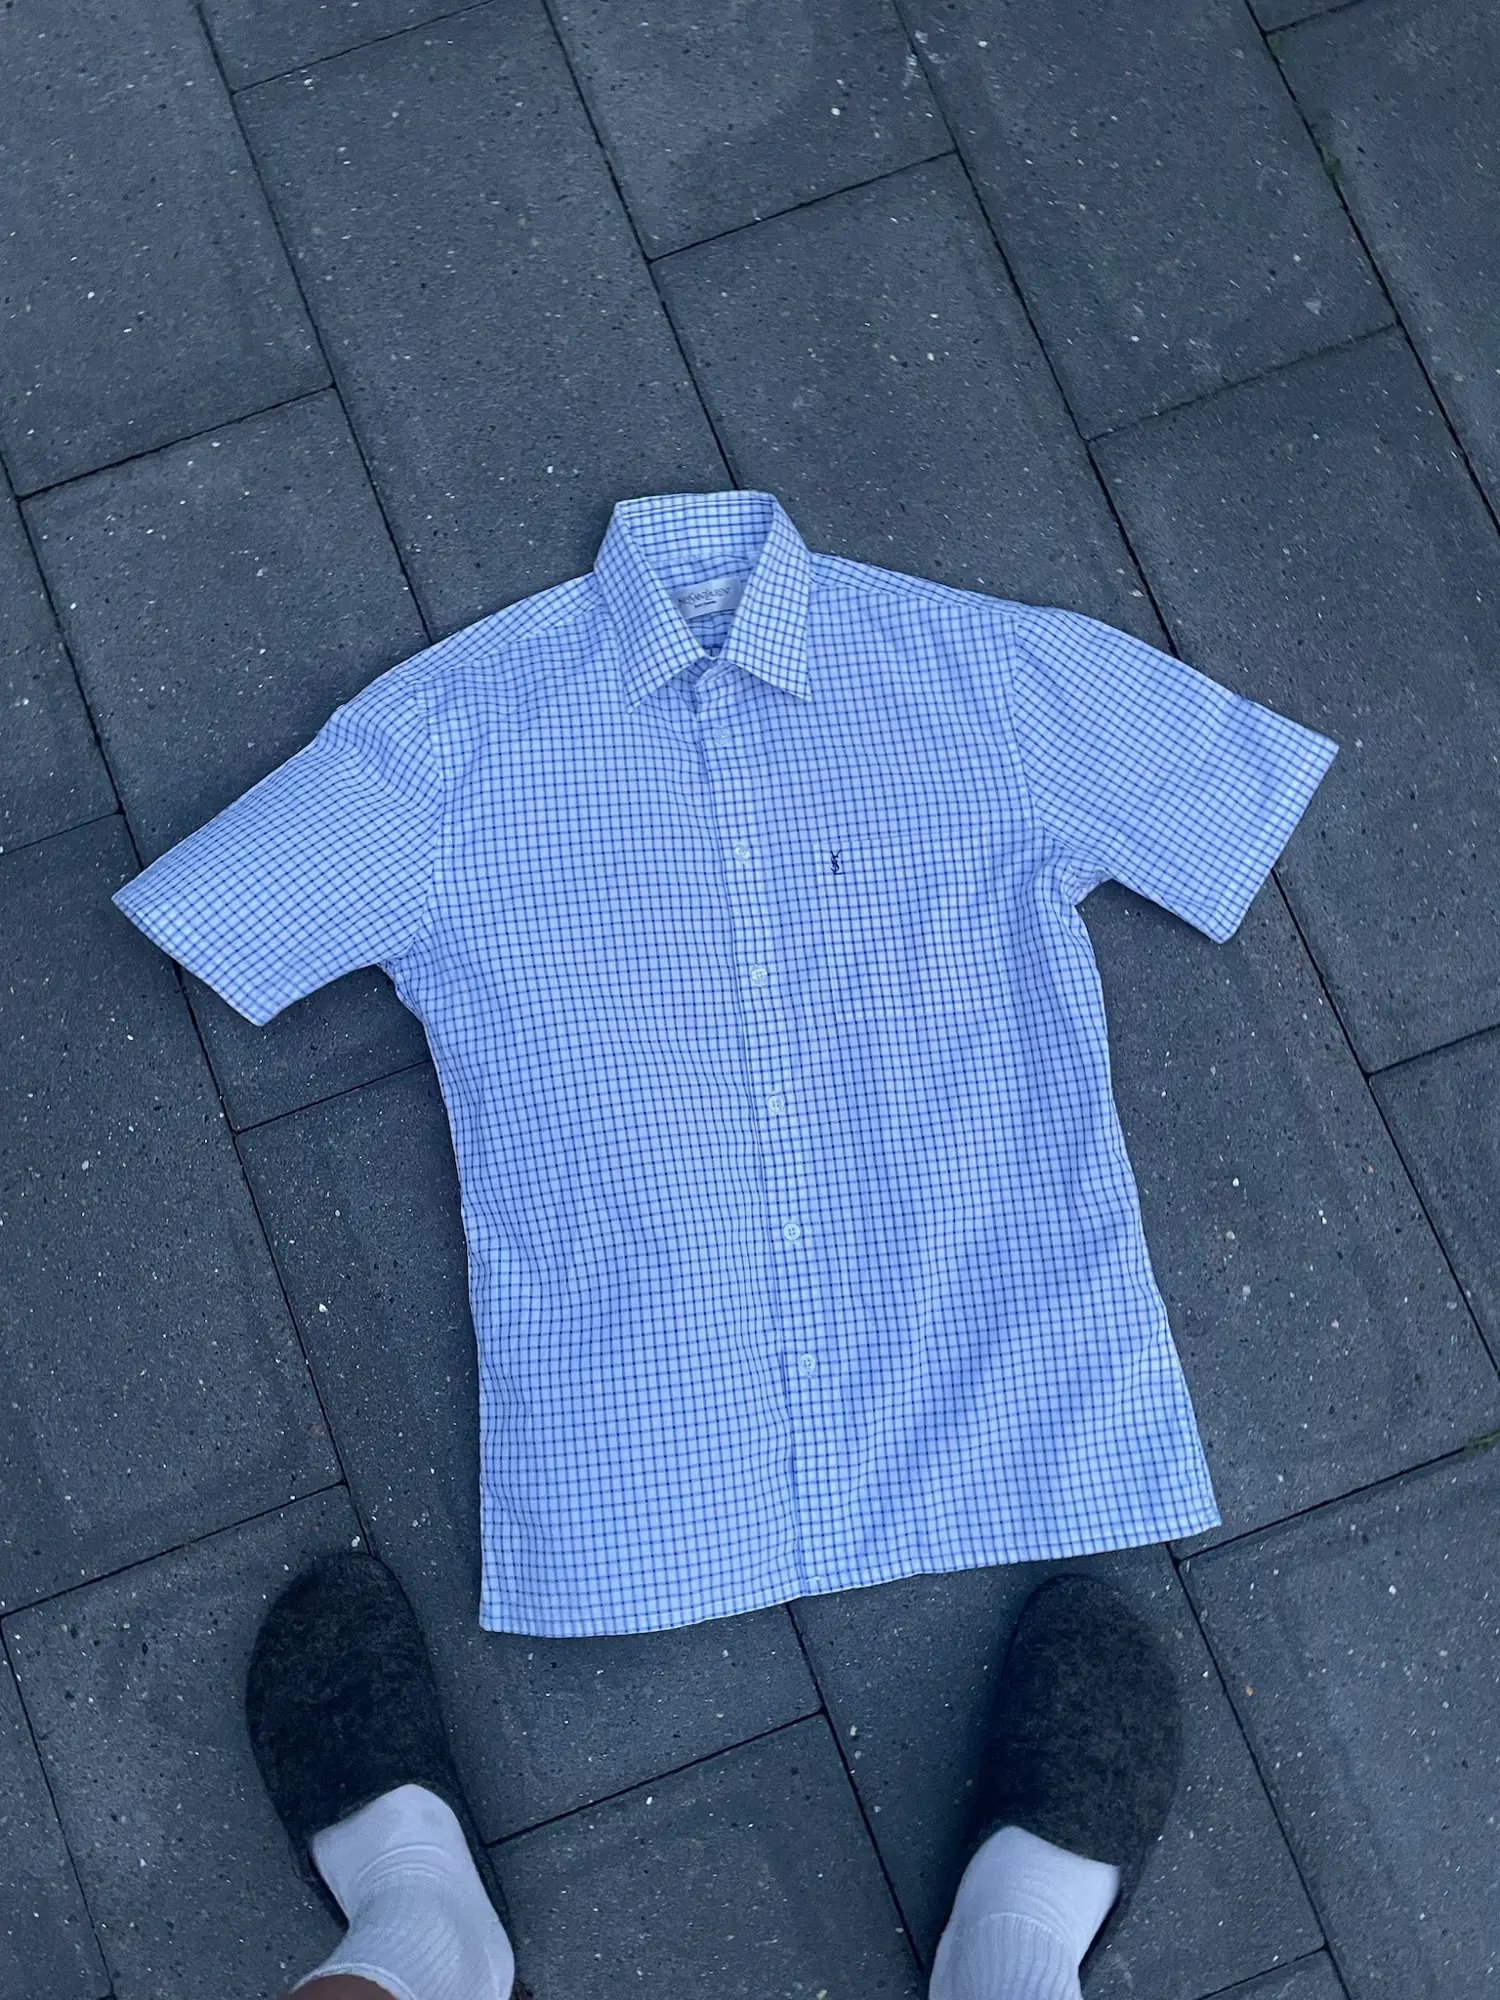 Yves Saint Laurent skjorte